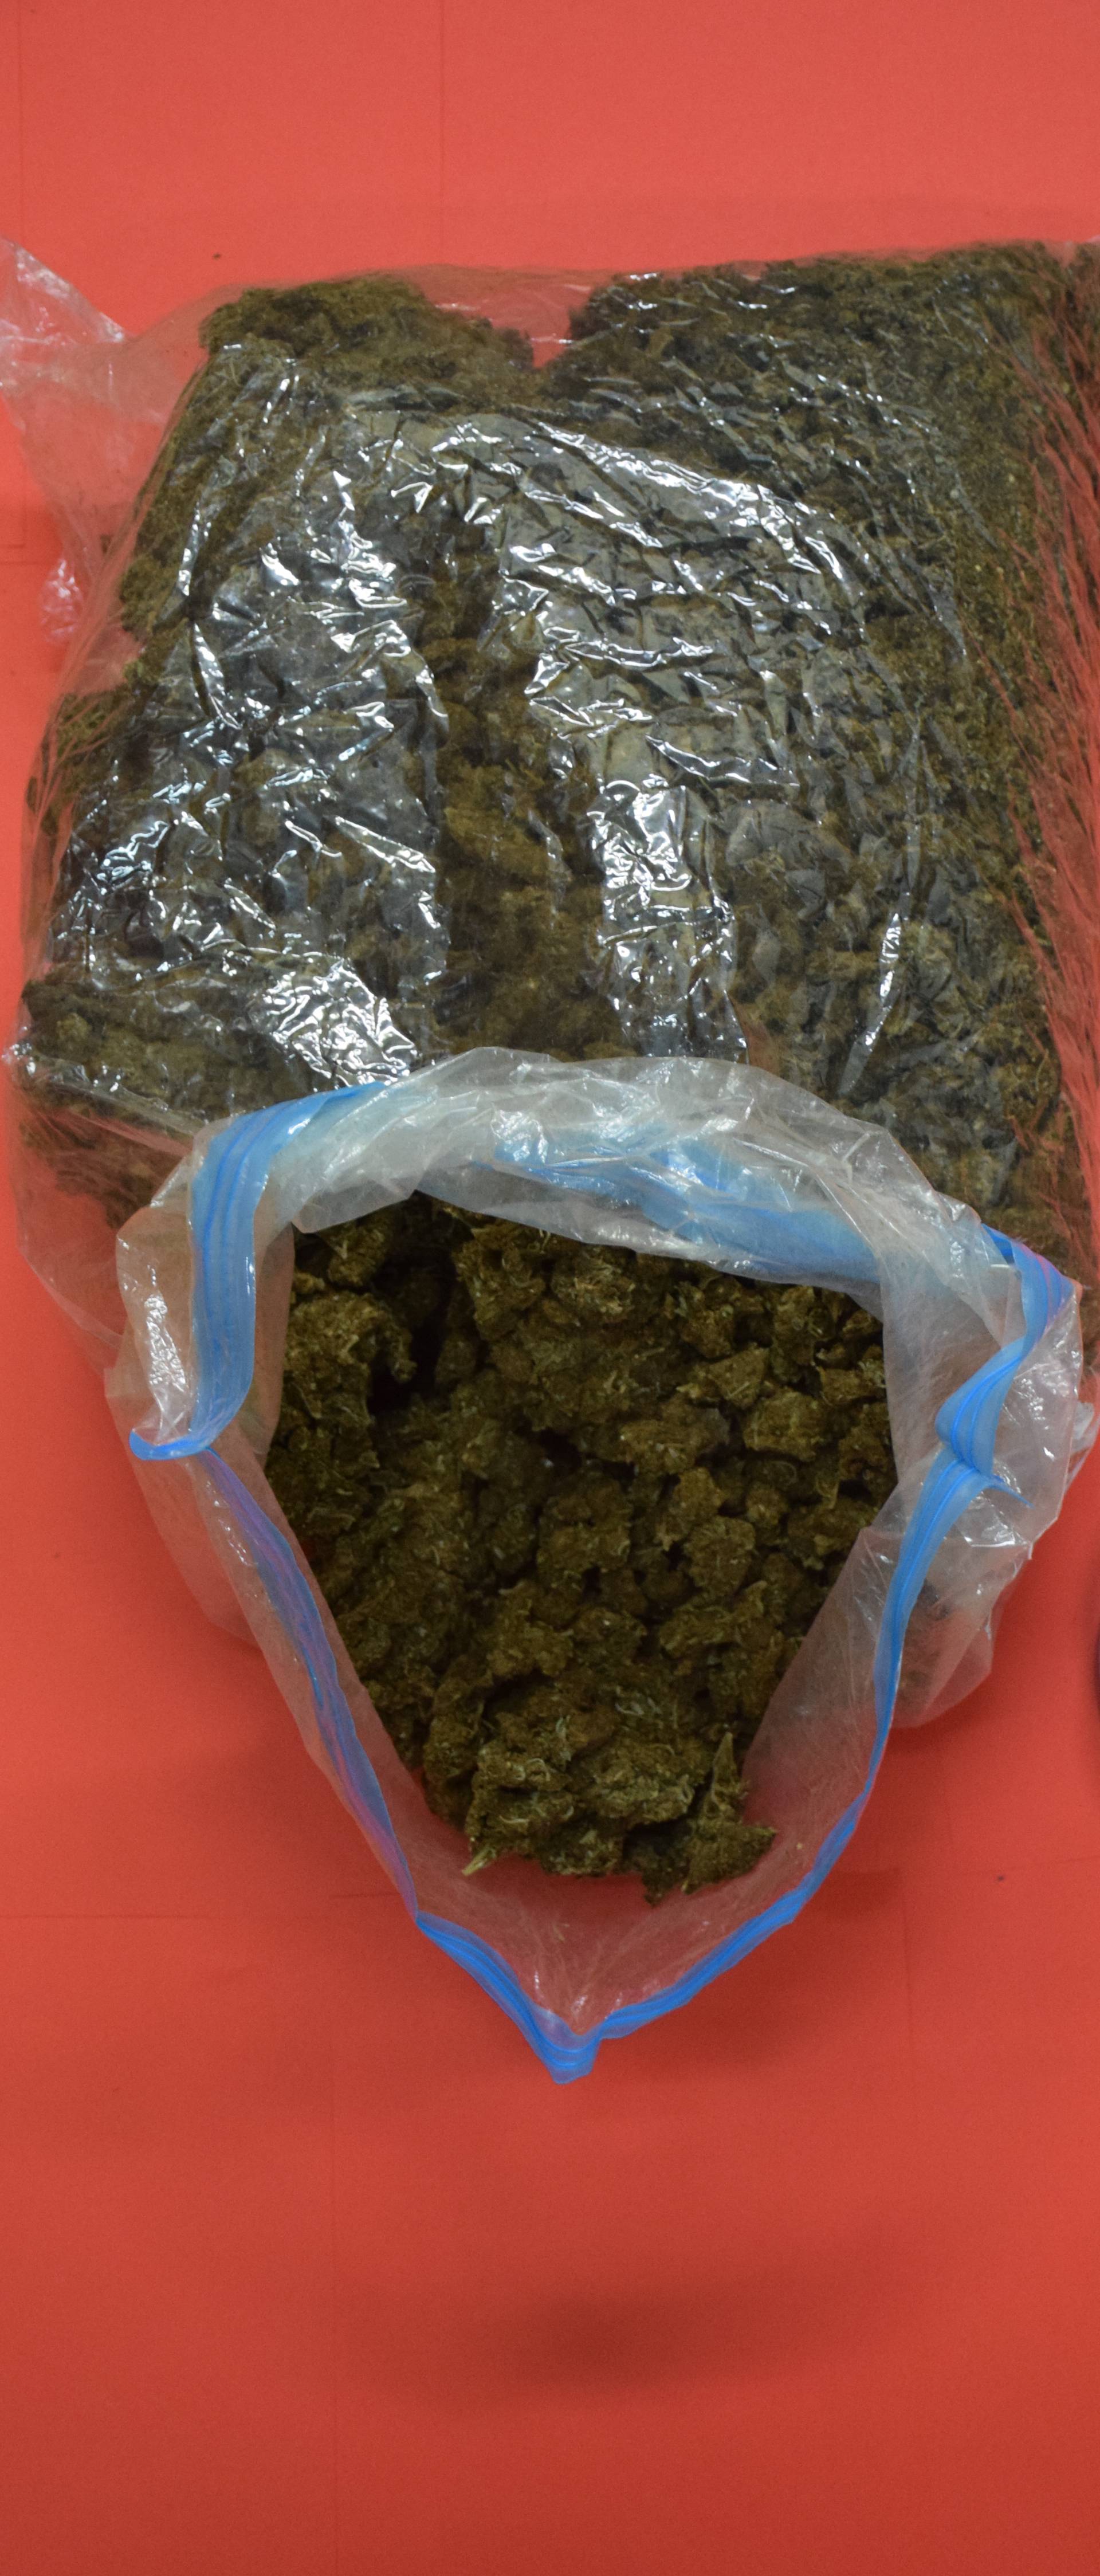 Kod mladića (20) pronašli su 3,5 kg marihuane i malu vagu